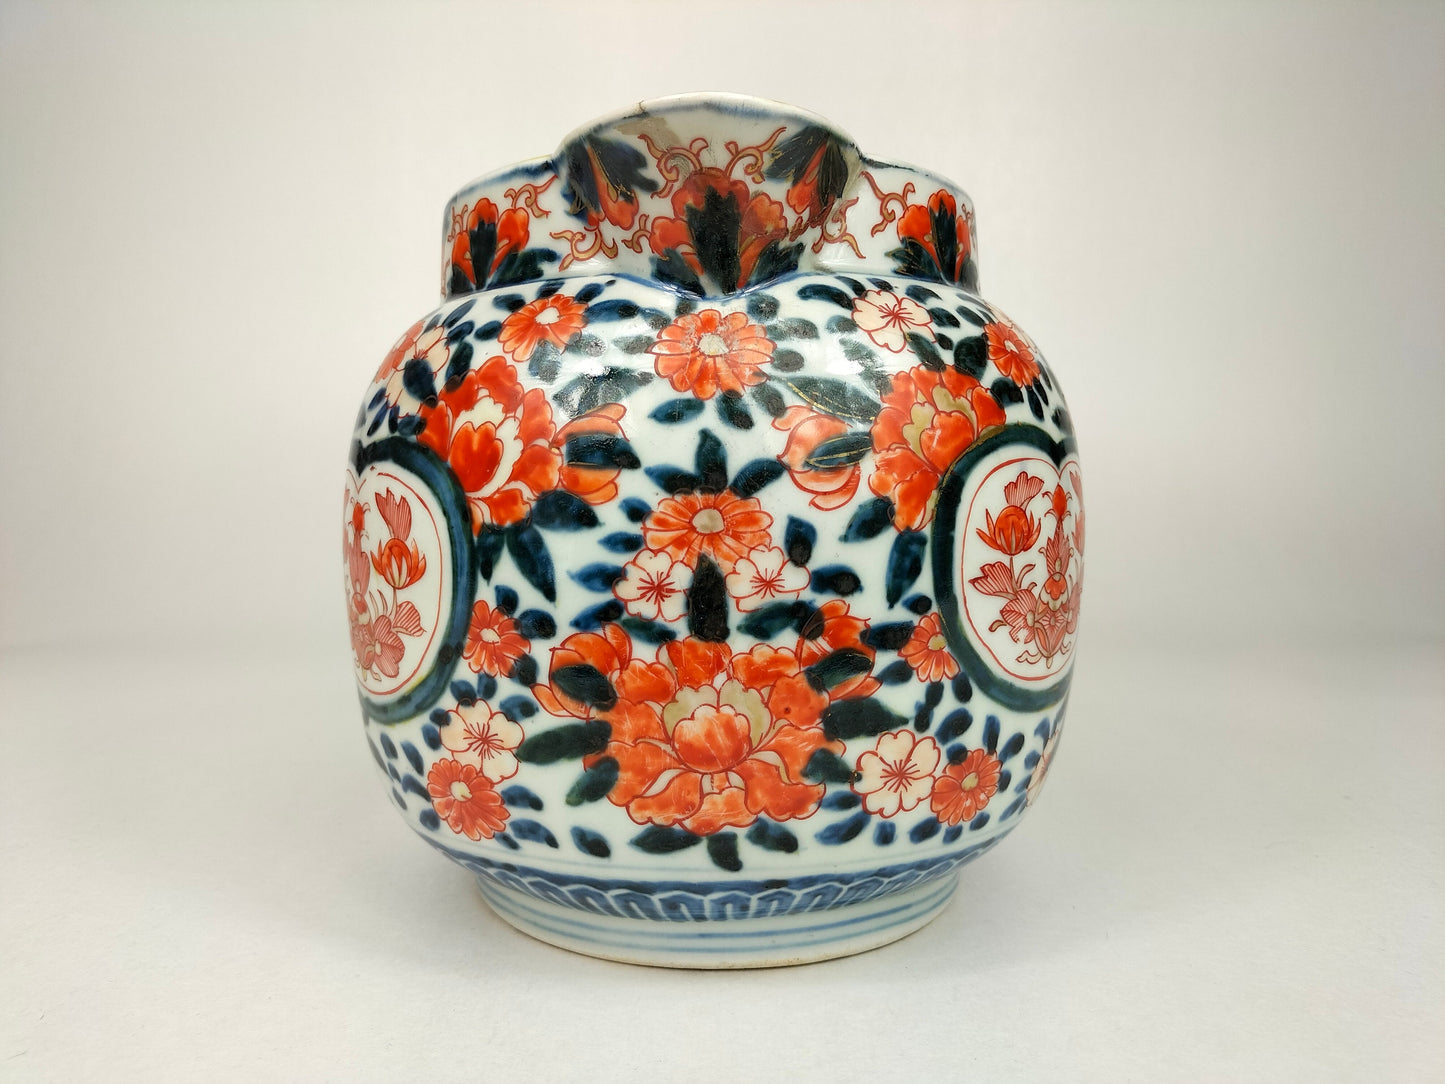 饰有花卉图案的大型古董日本 imari 水罐 // 明治时期 - 19 世纪